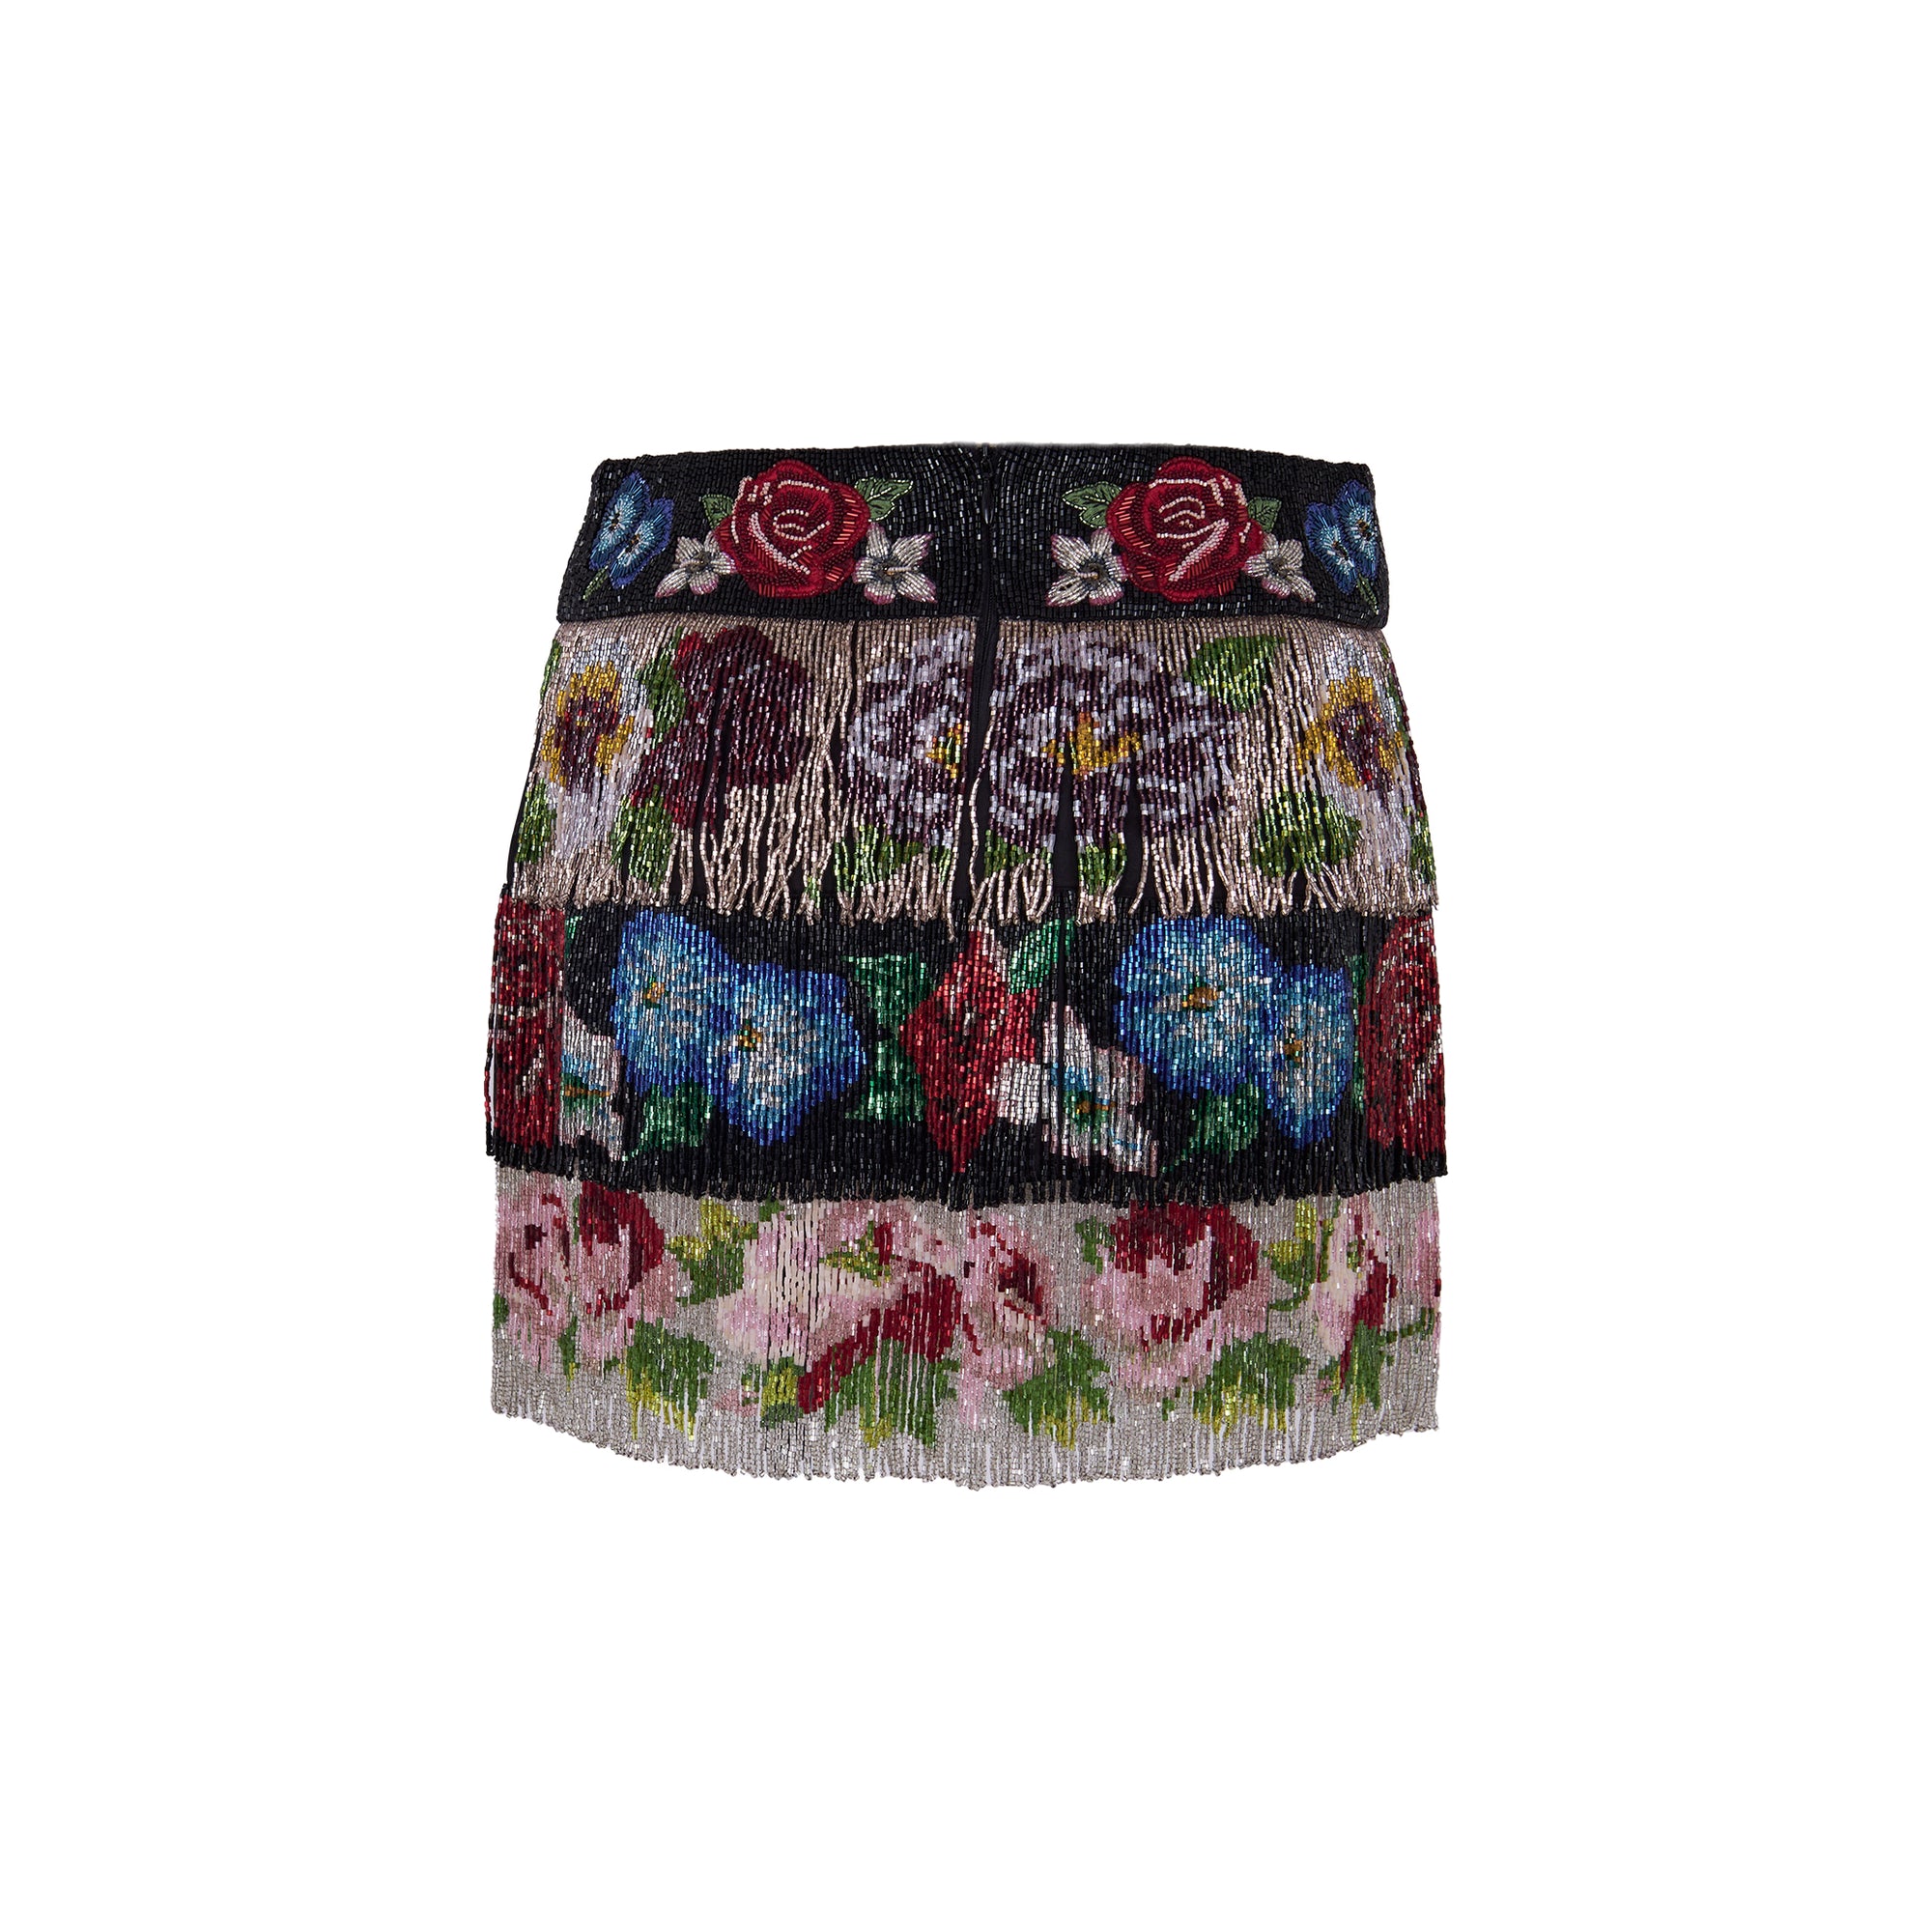 Dolce & Gabbana Beaded Fringe Floral Skirt